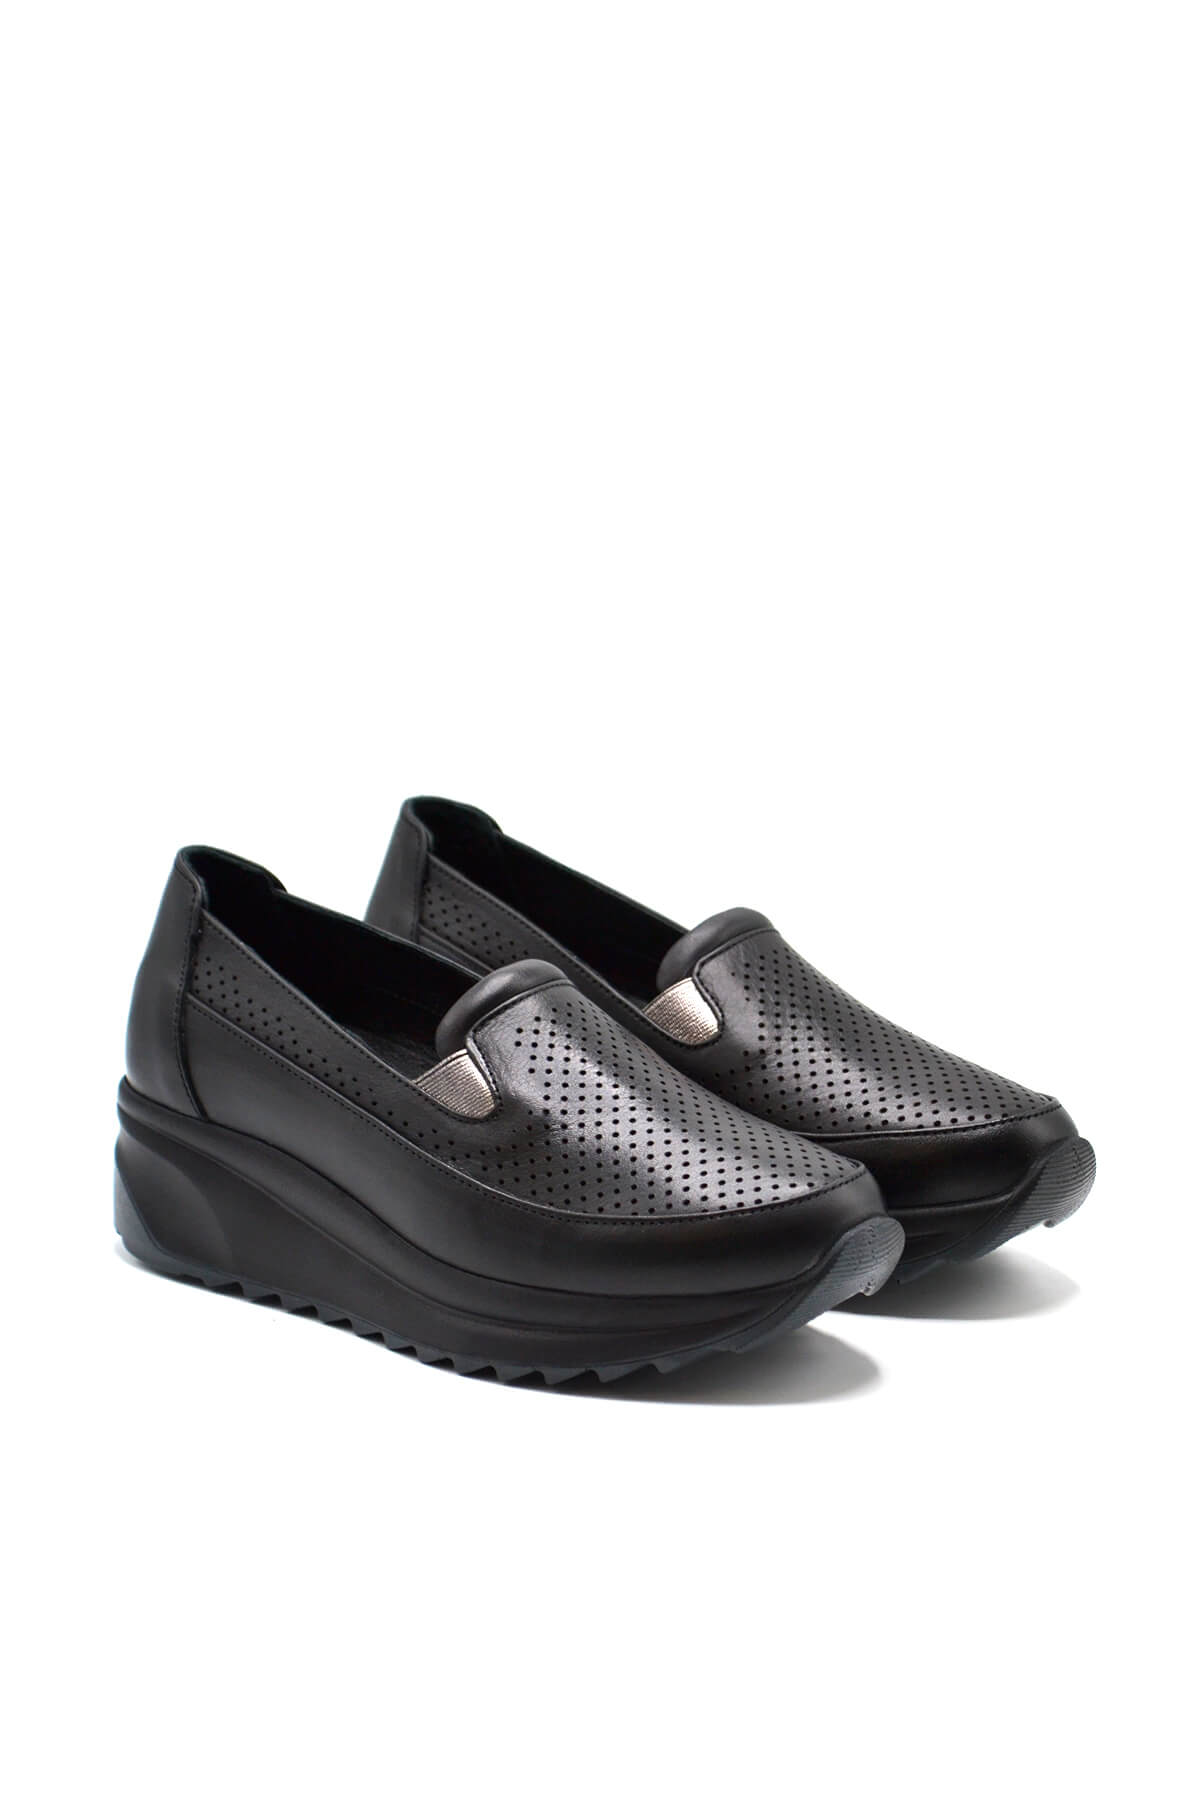 Kadın Dolgu Topuk Deri Sneakers Siyah 2310302Y